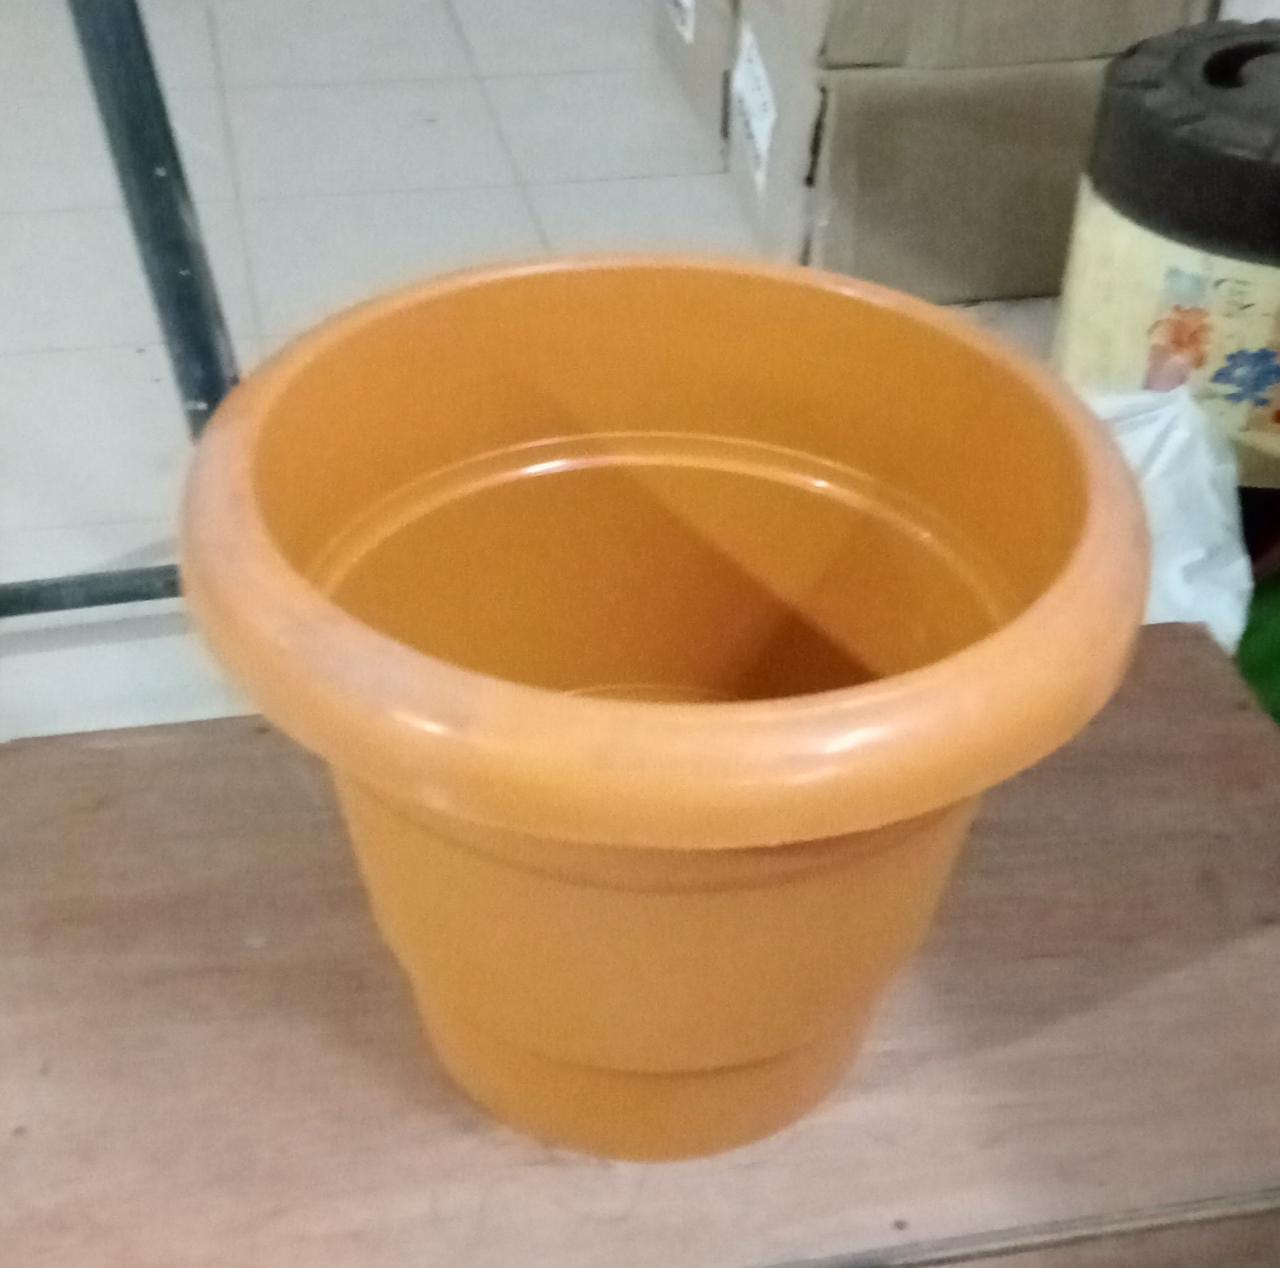 Garden Heavy Plastic Planter Pot/Gamla  (Brown, Pack of 1) 